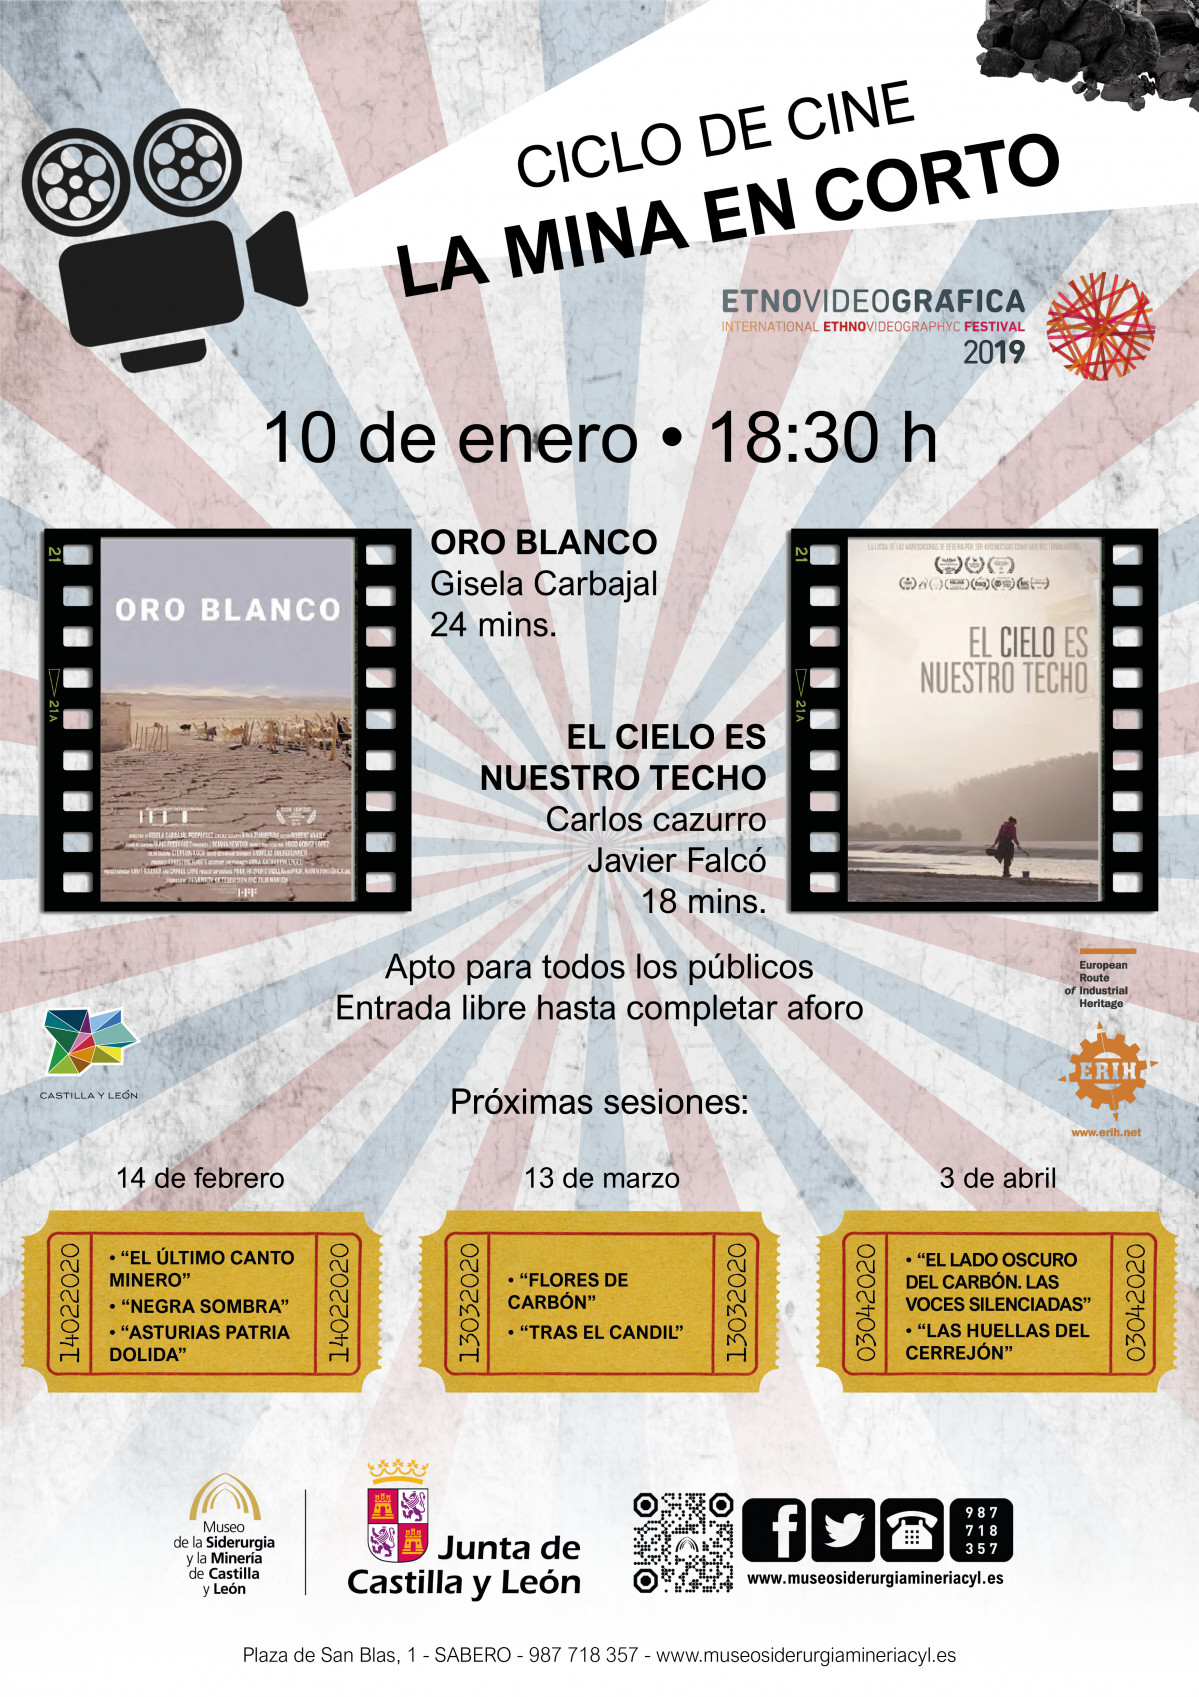 Ciclo de cine La mina en corto   enero